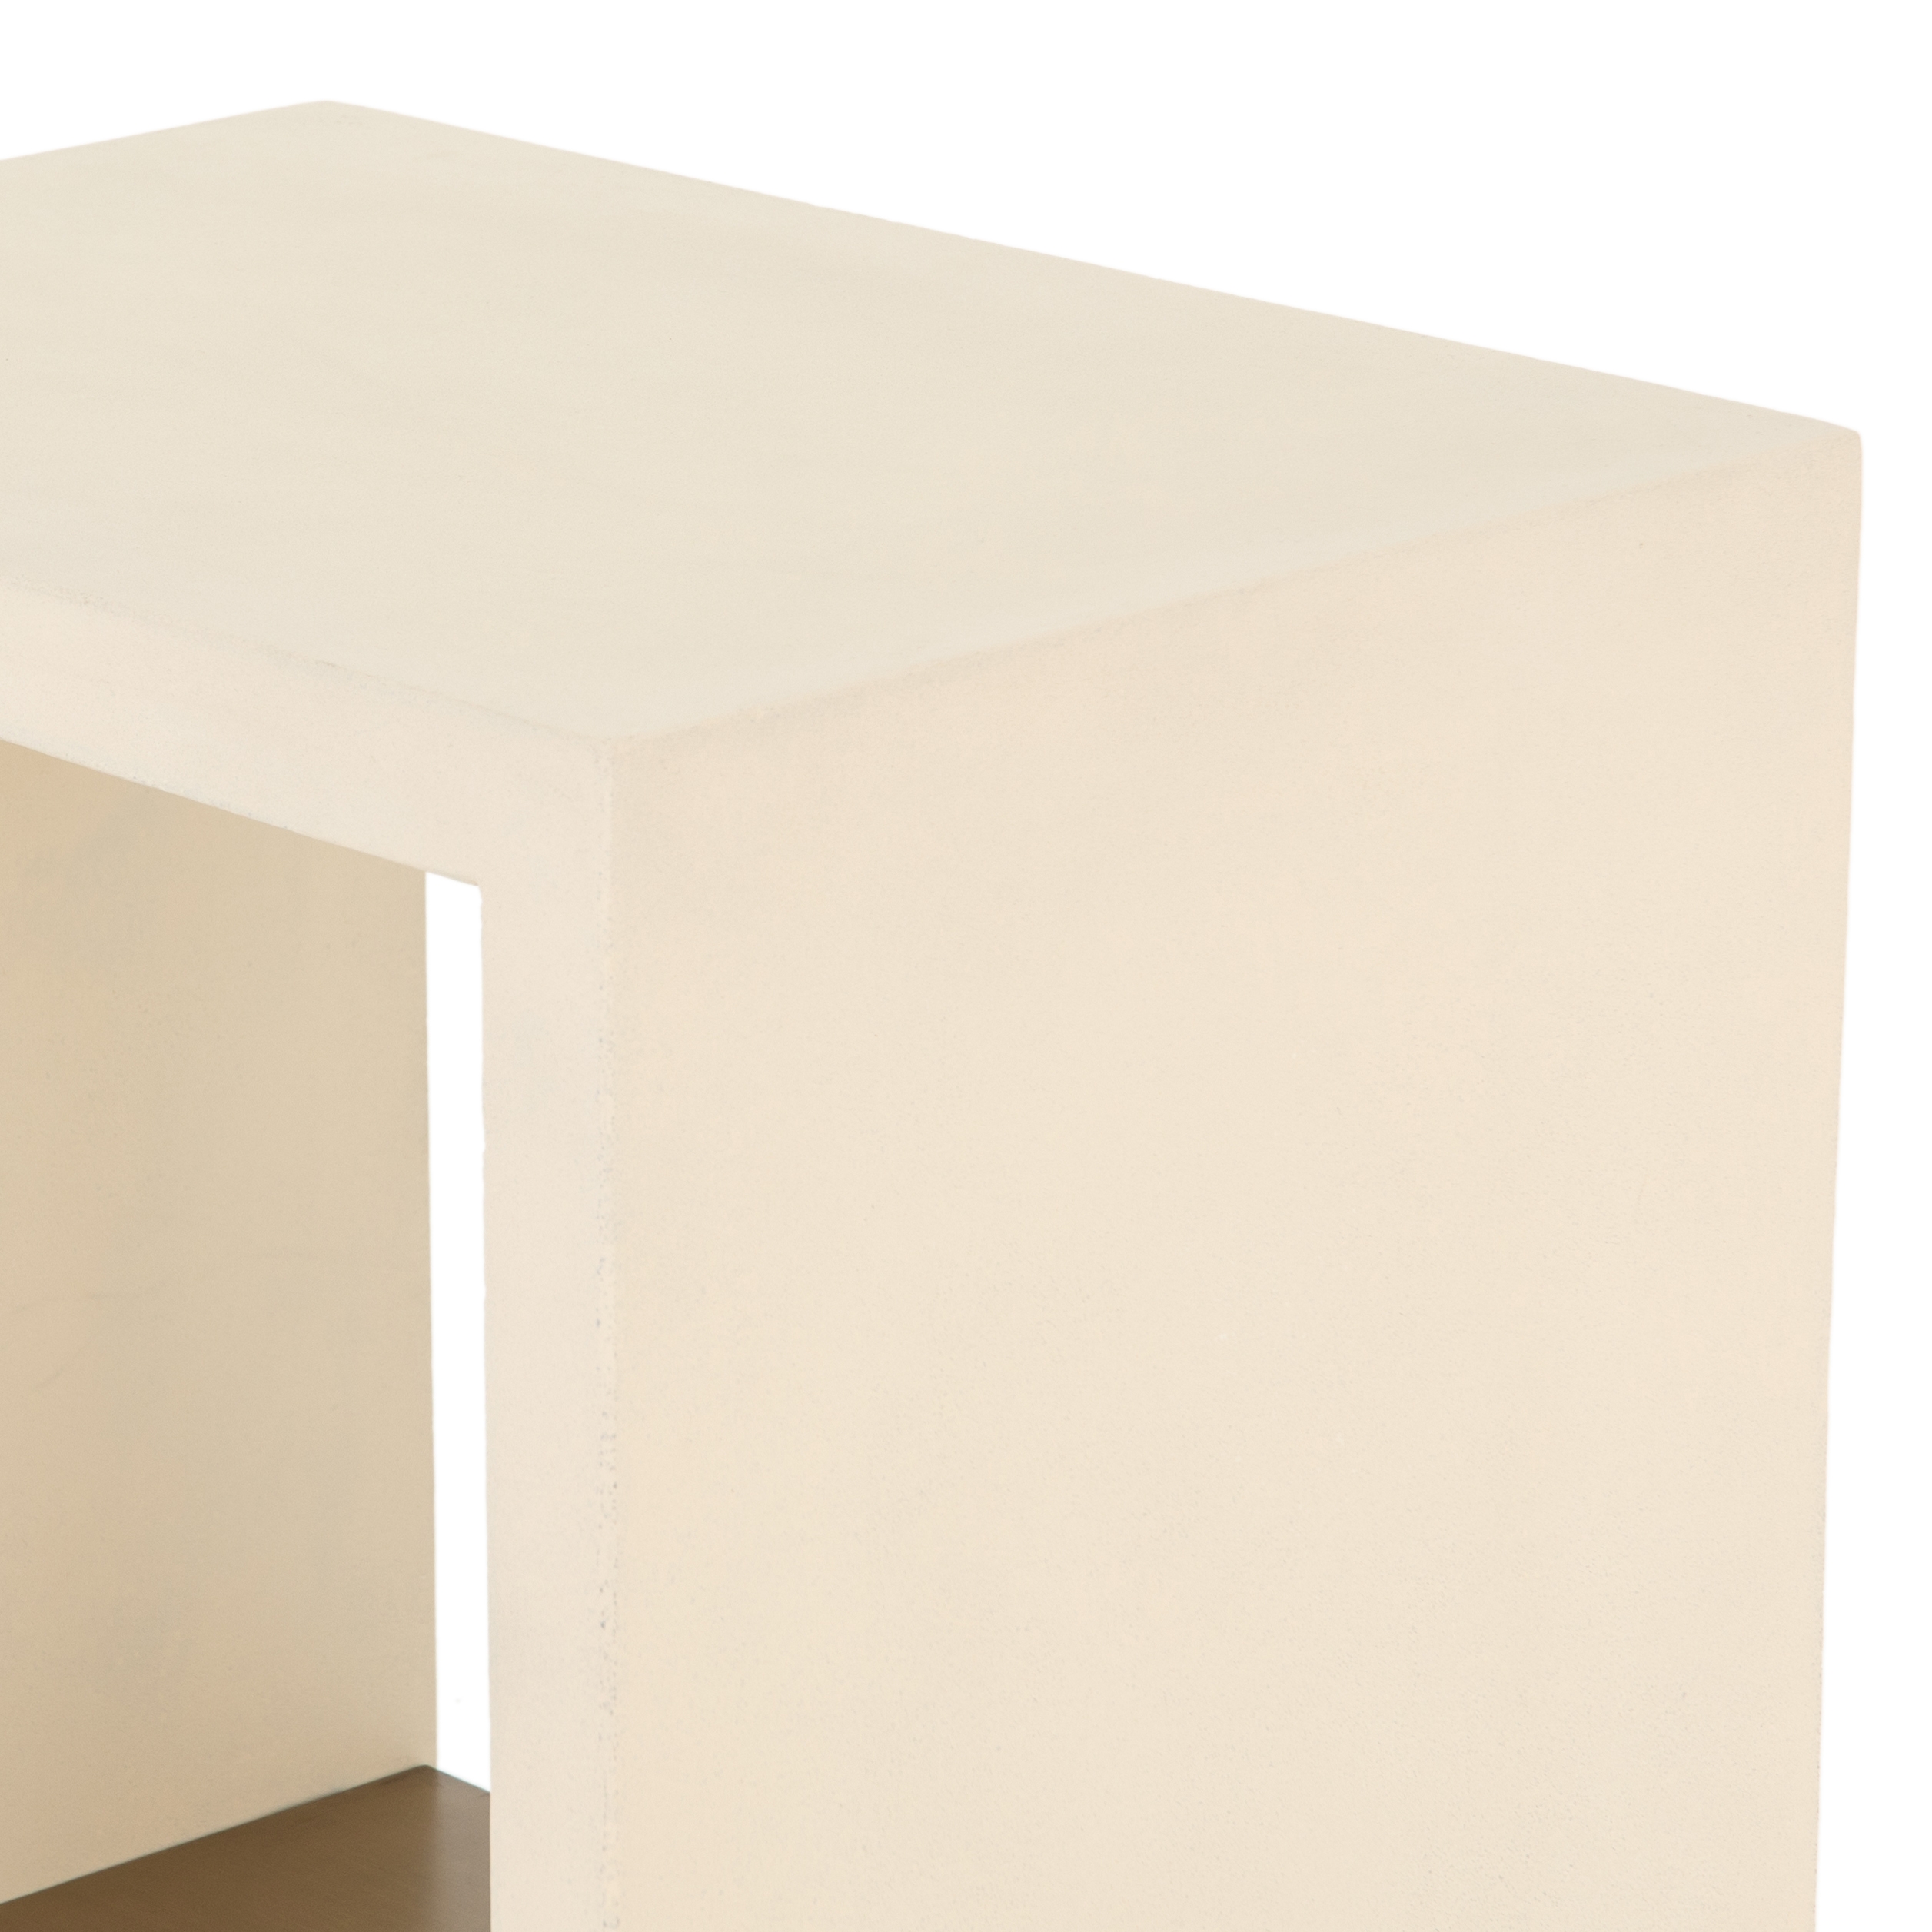 Aprilette End Table, Parchment White - Image 5